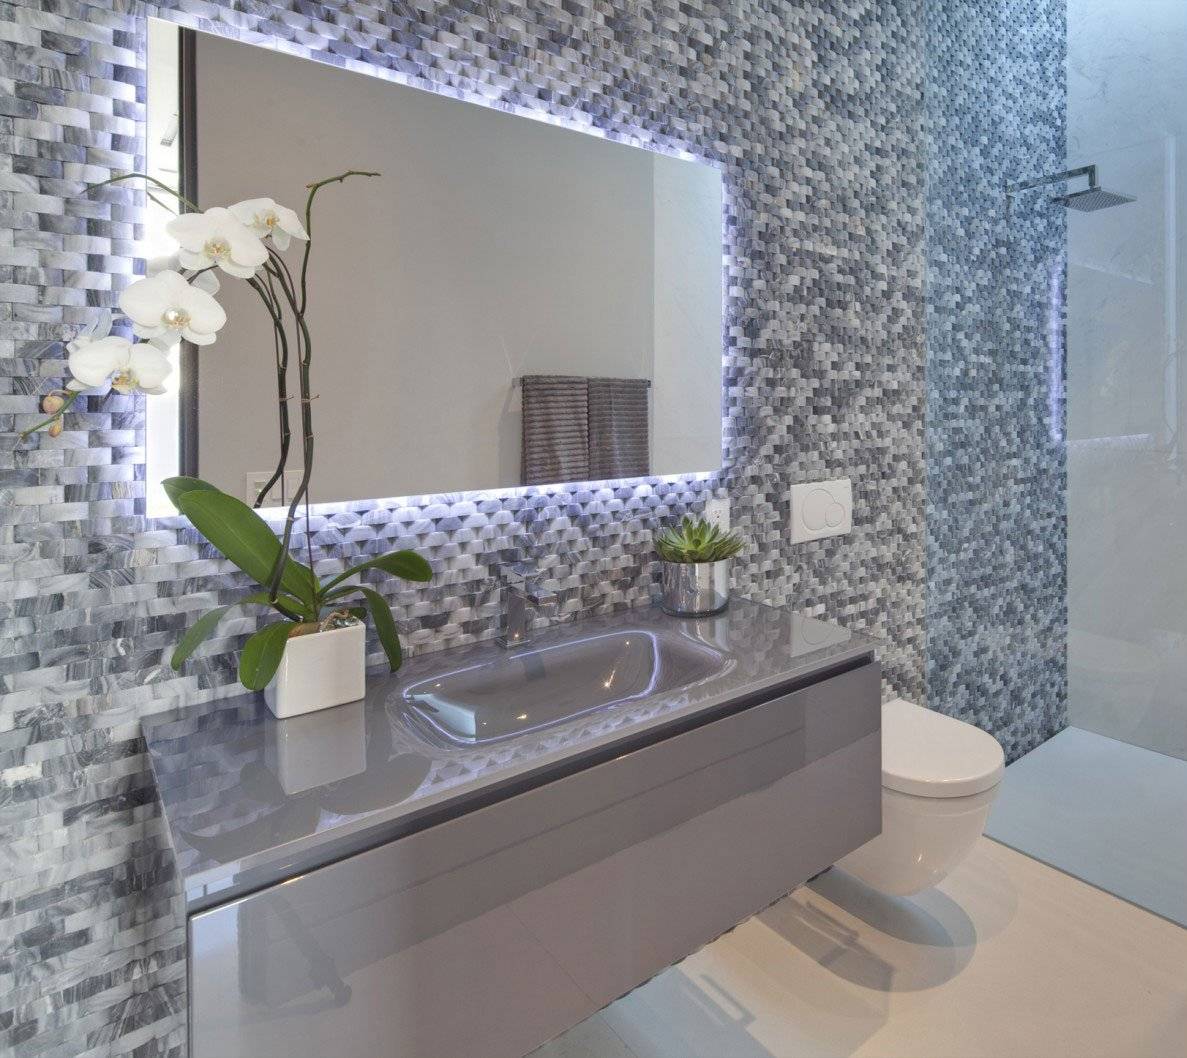 Дизайн ванной с мозаикой – обсуждаем плюсы и минусы | онлайн-журнал о ремонте и дизайне